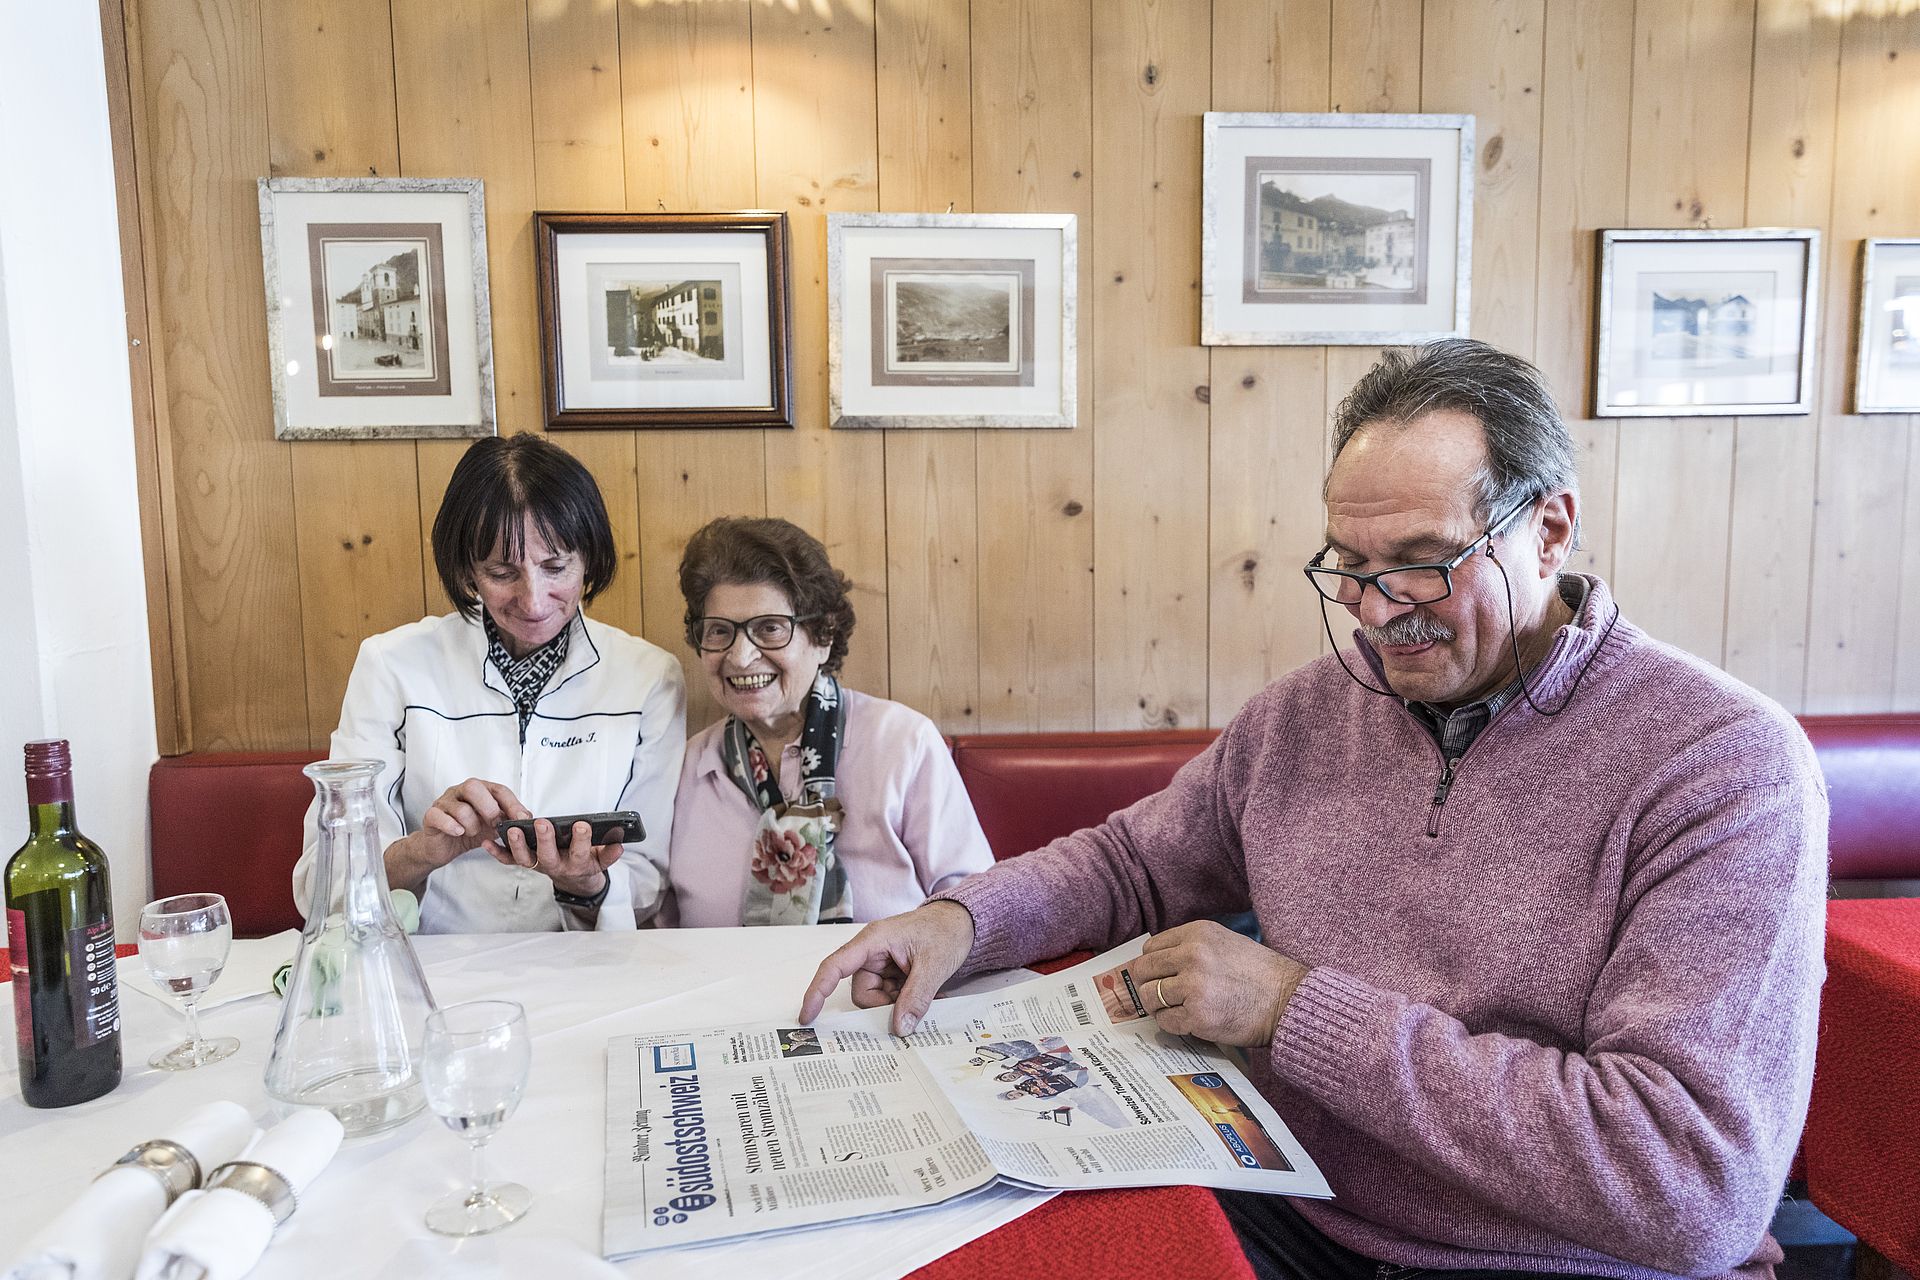 Fausto leest de krant in 'Motrice'. Links zijn echtgenote Ornella